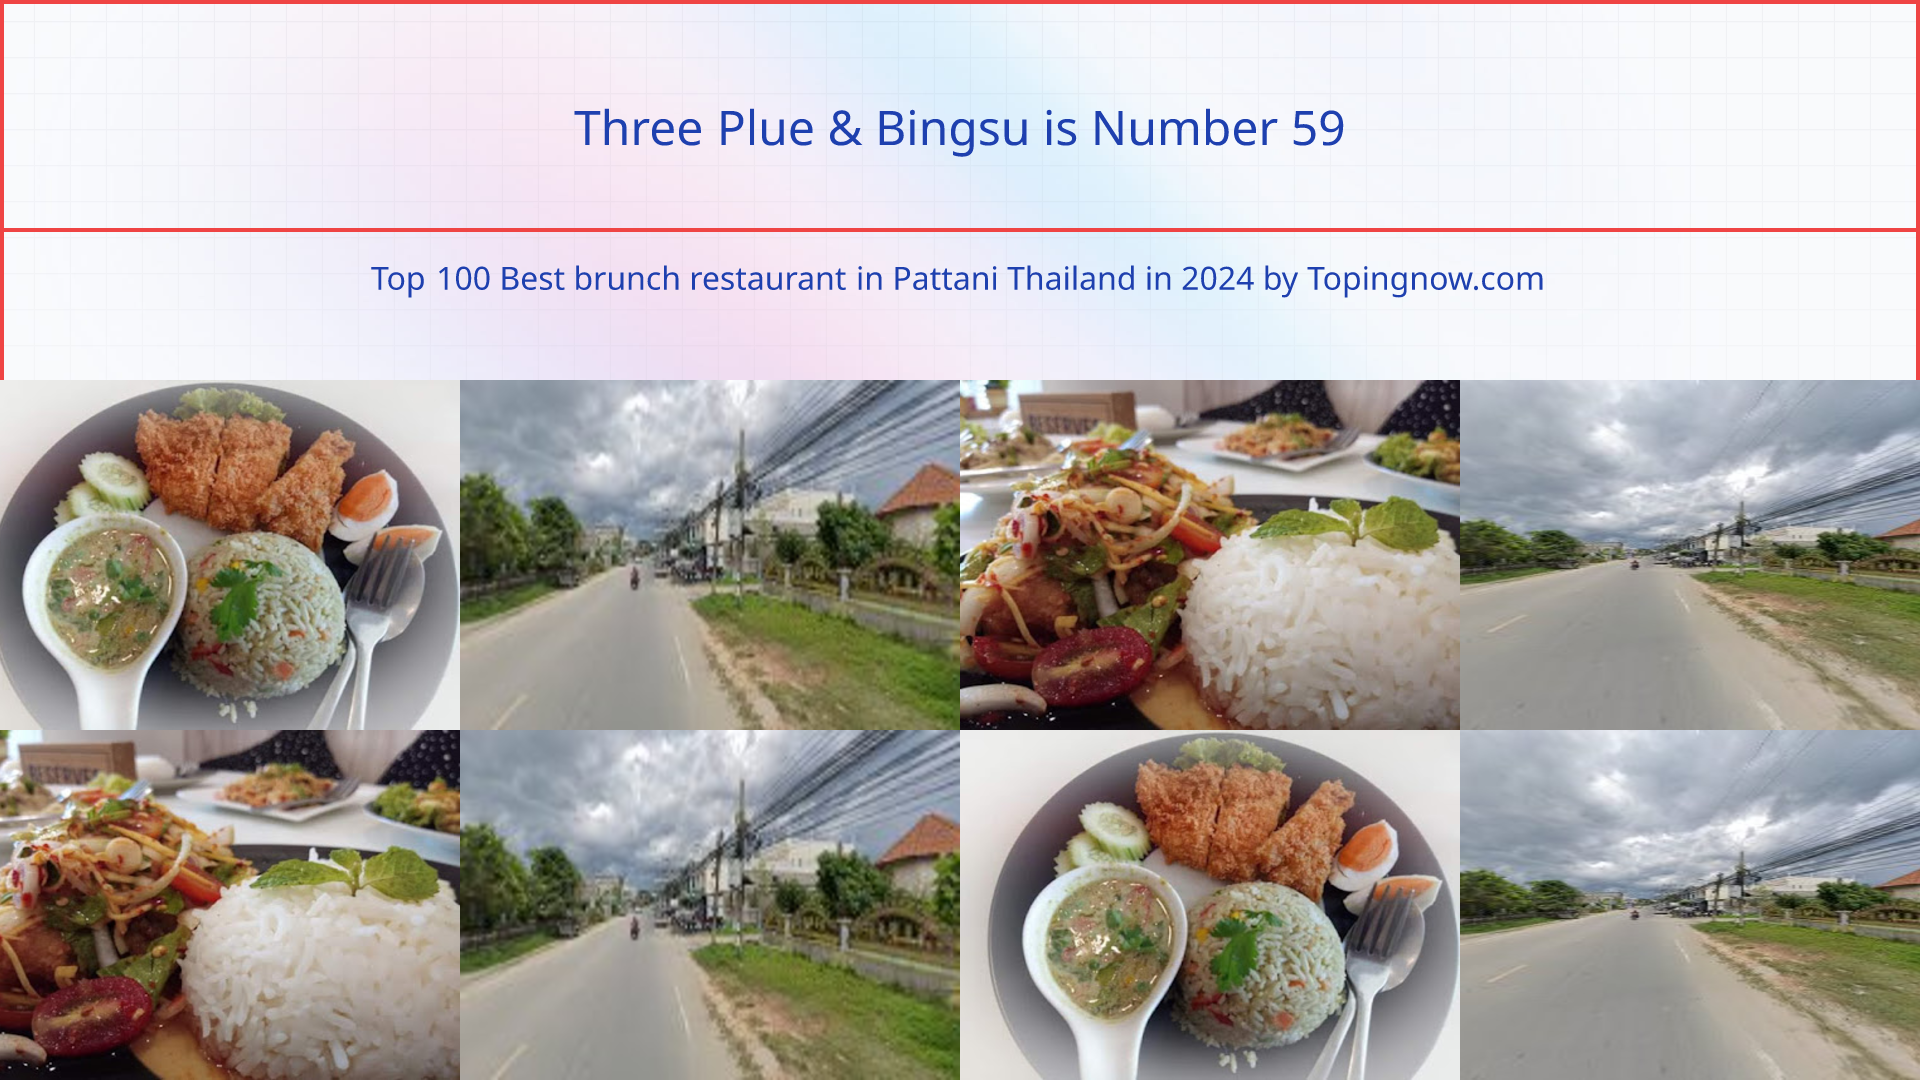 Three Plue & Bingsu: Top 100 Best brunch restaurant in Pattani Thailand in 2024